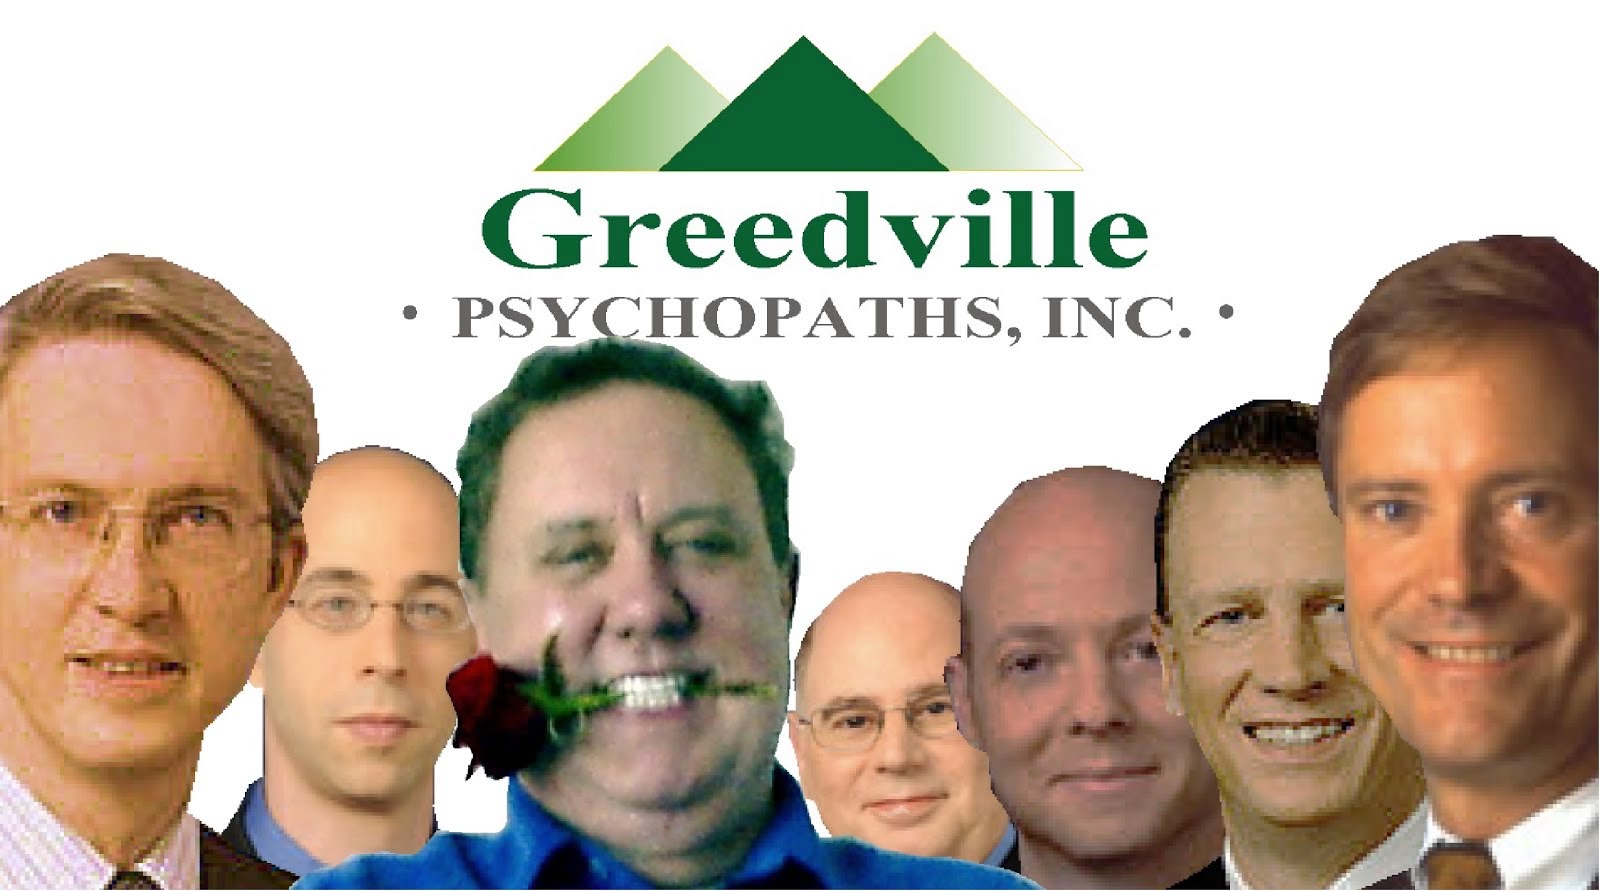 Greedville